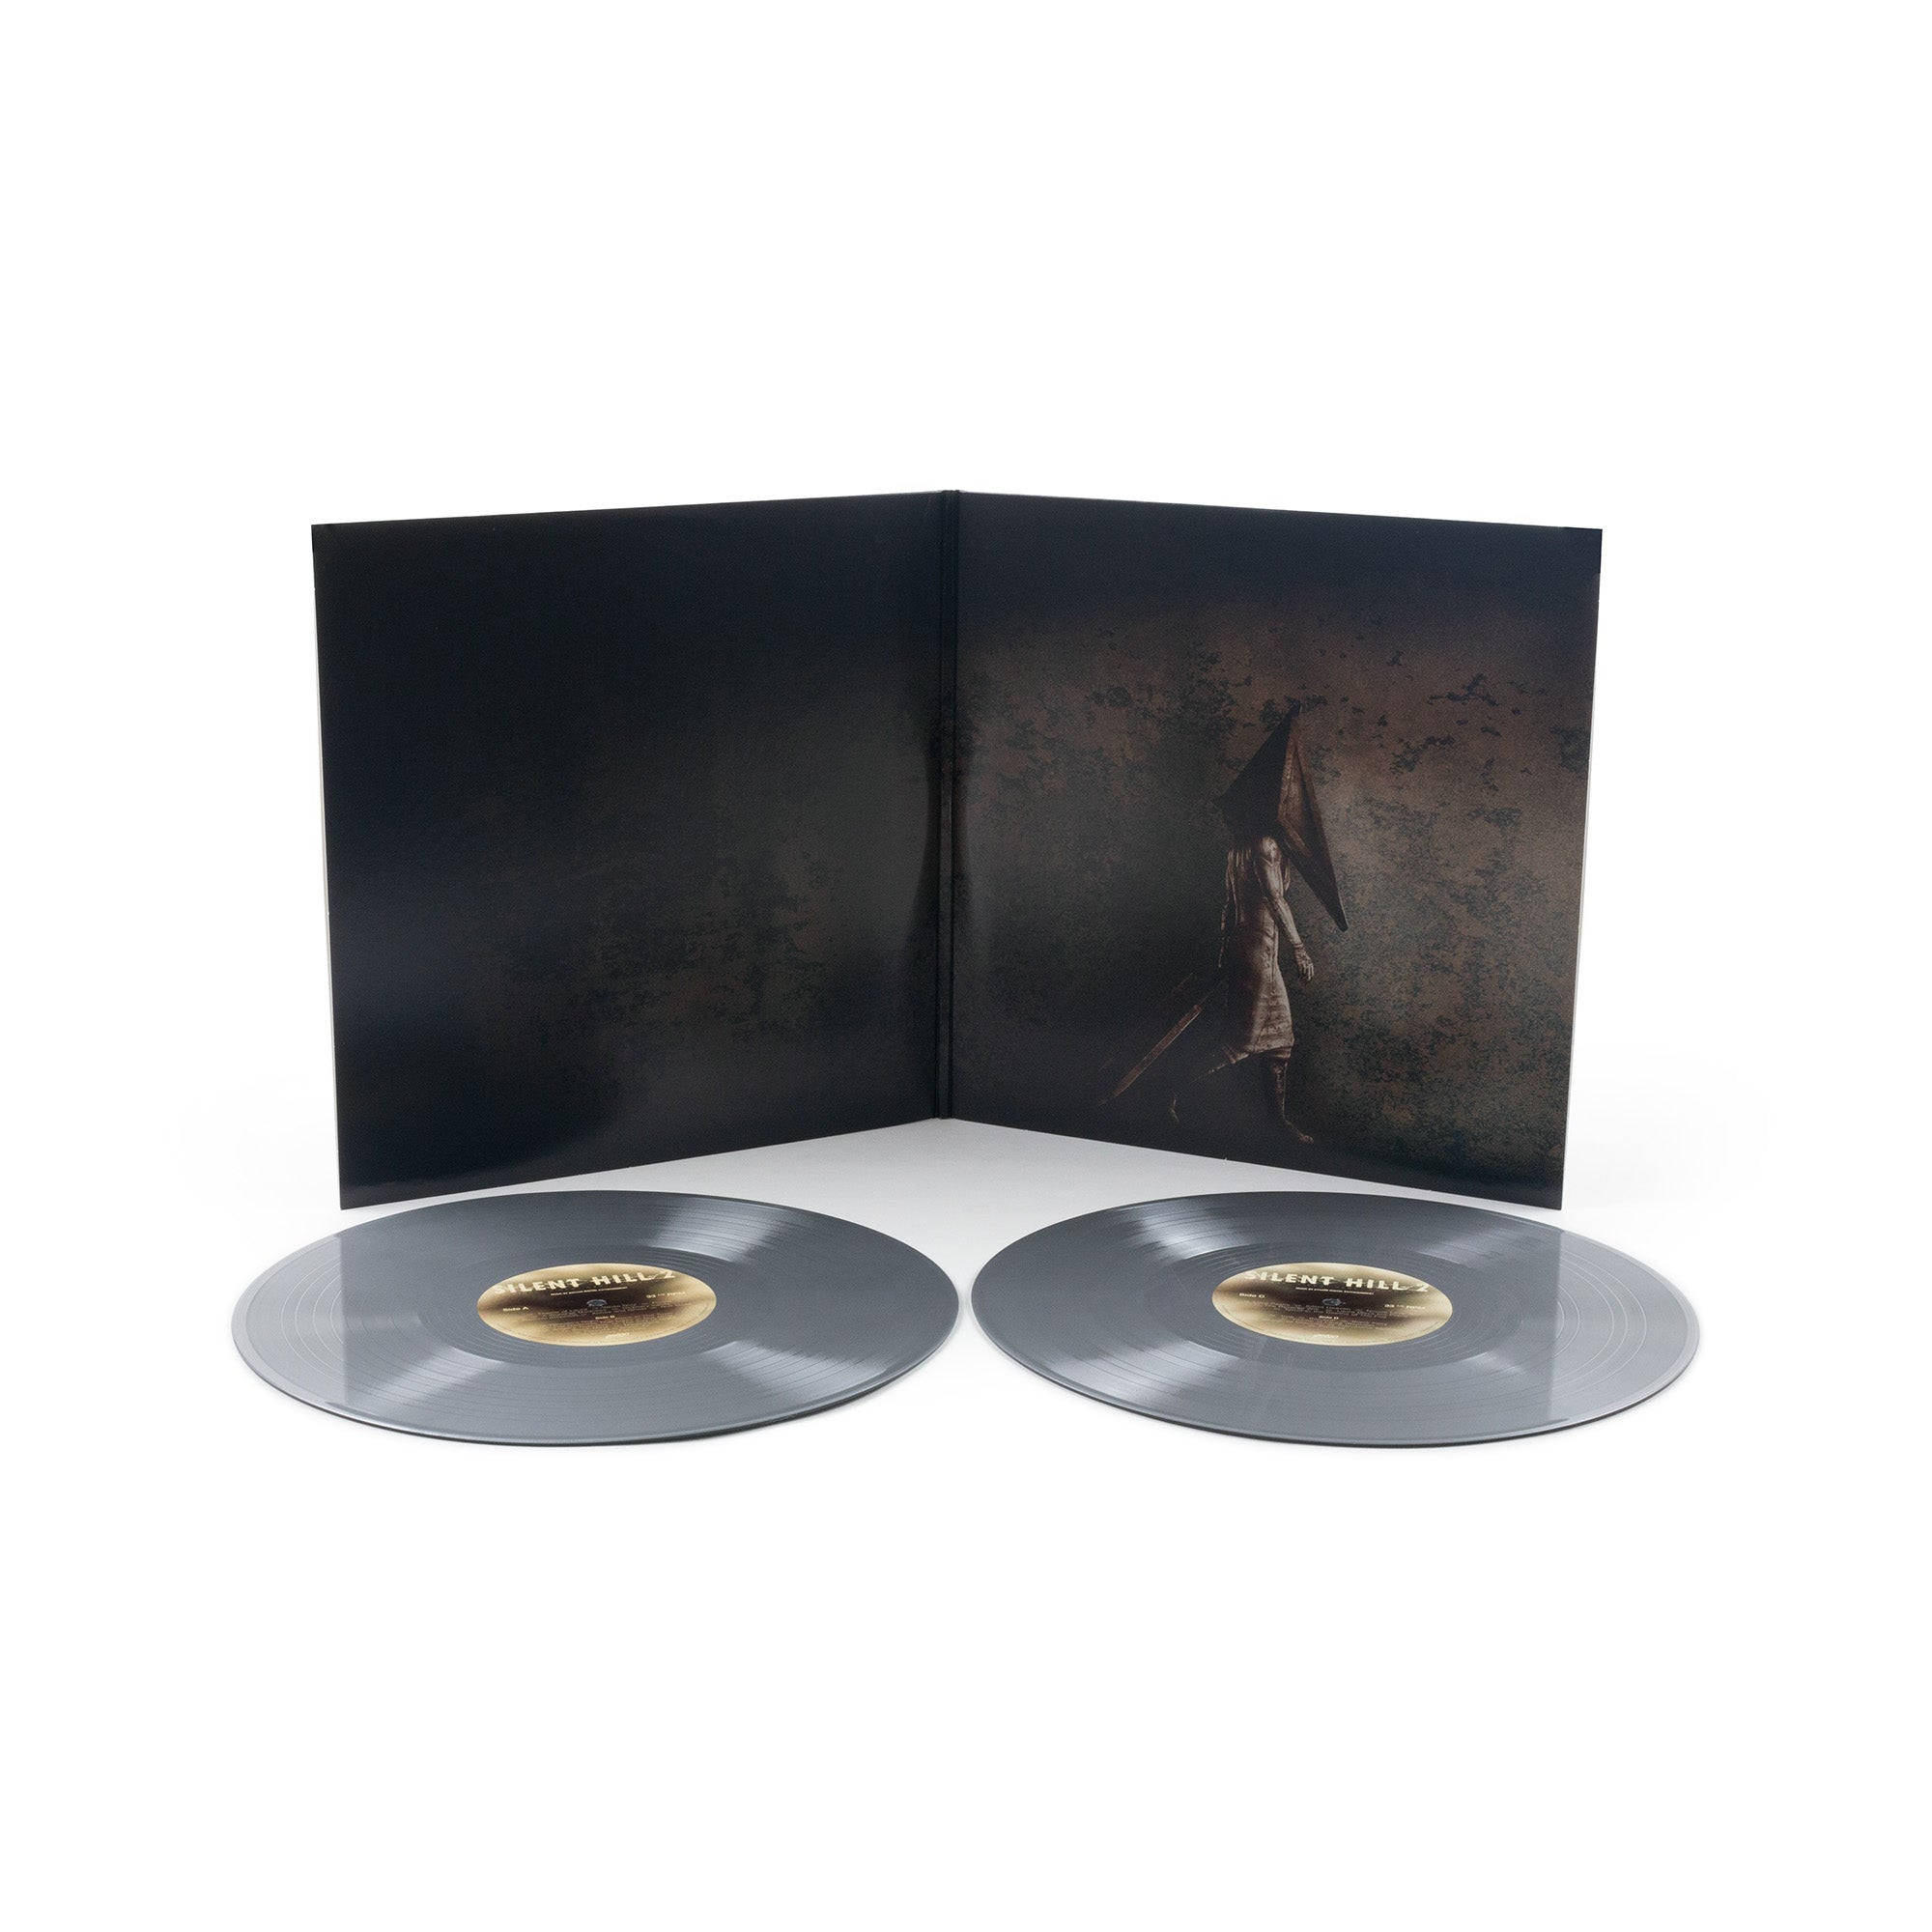 日本製品 Silent Hill 2 Soundtrack LP サントラ レコード サイレント